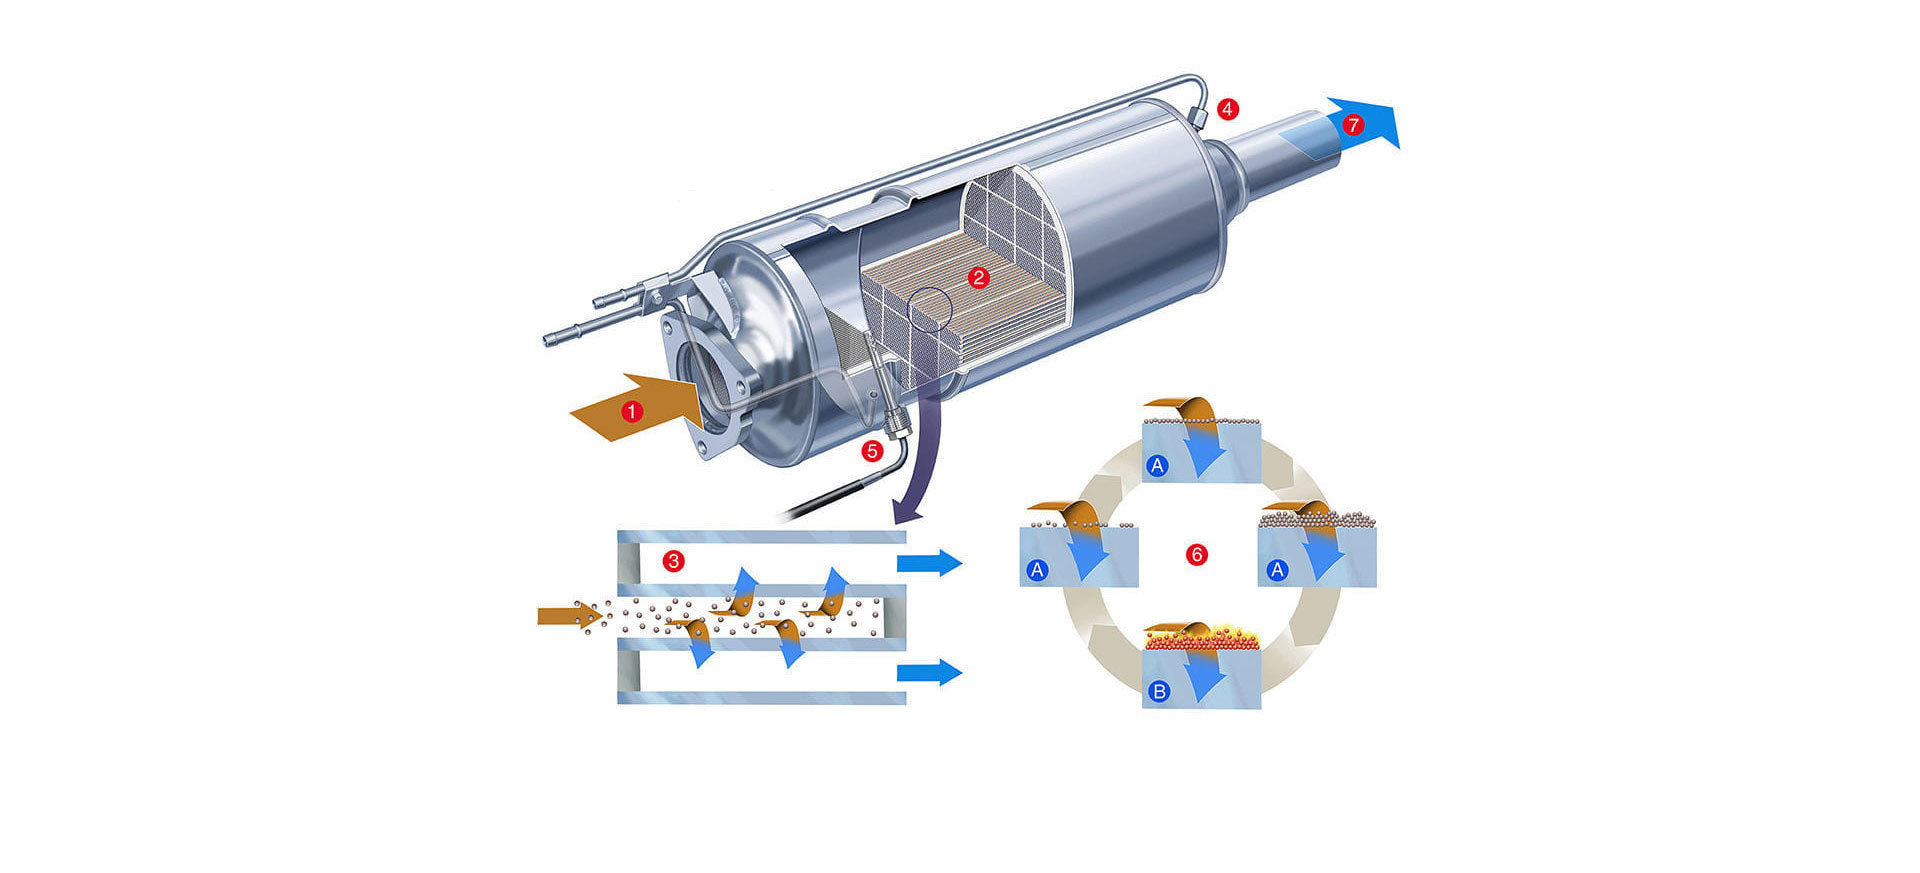 Aditivo de combustible para limpiar el filtro de partículas (DAP)